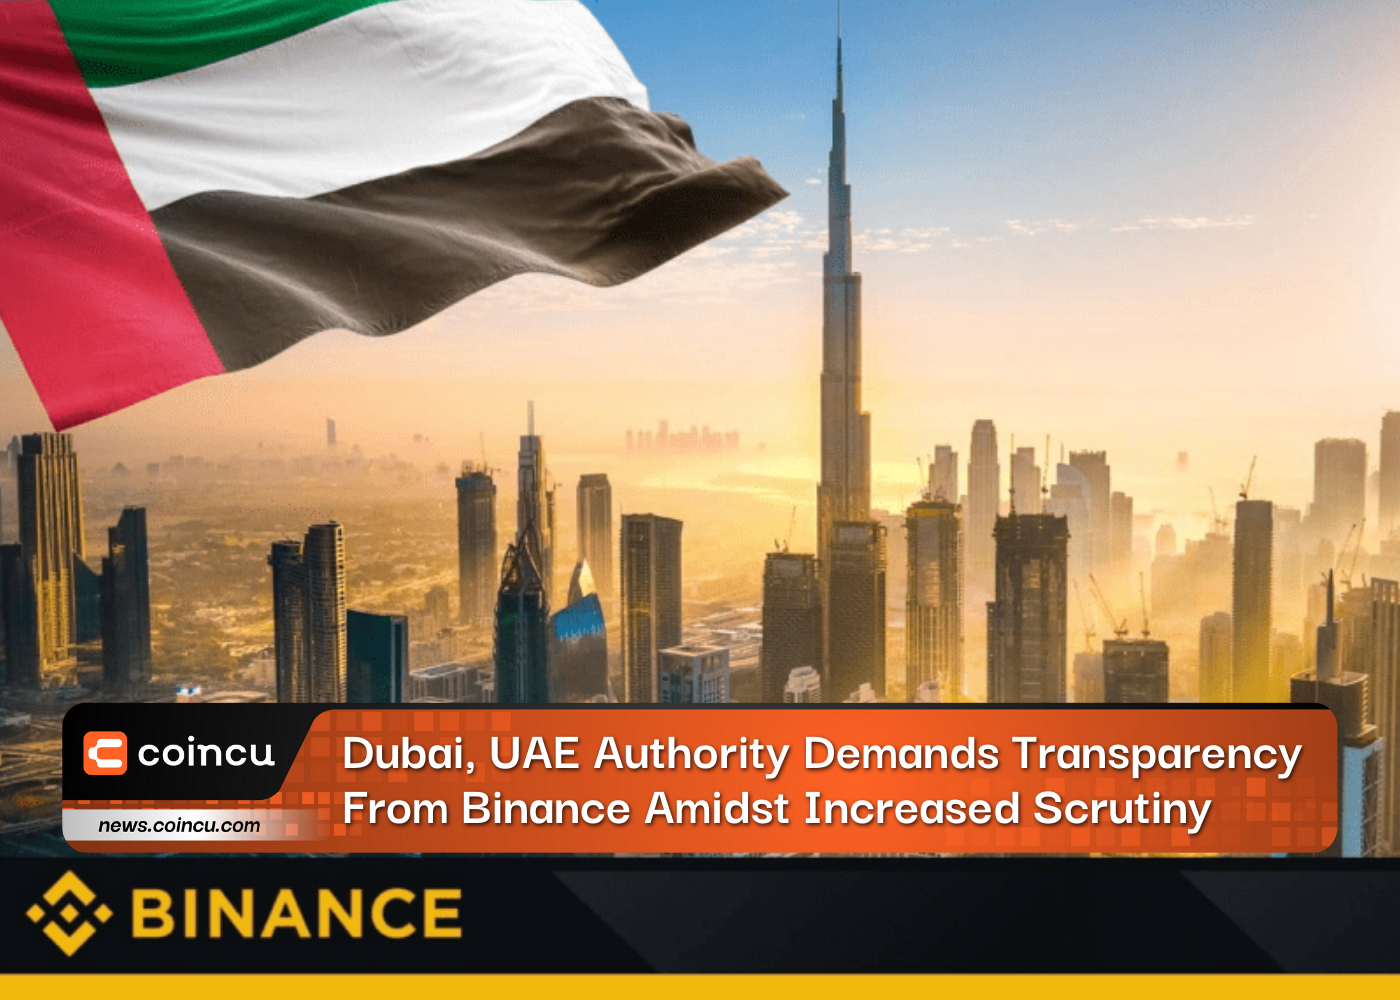 La autoridad de Dubai y los Emiratos Árabes Unidos exige transparencia a Binance en medio de un mayor escrutinio